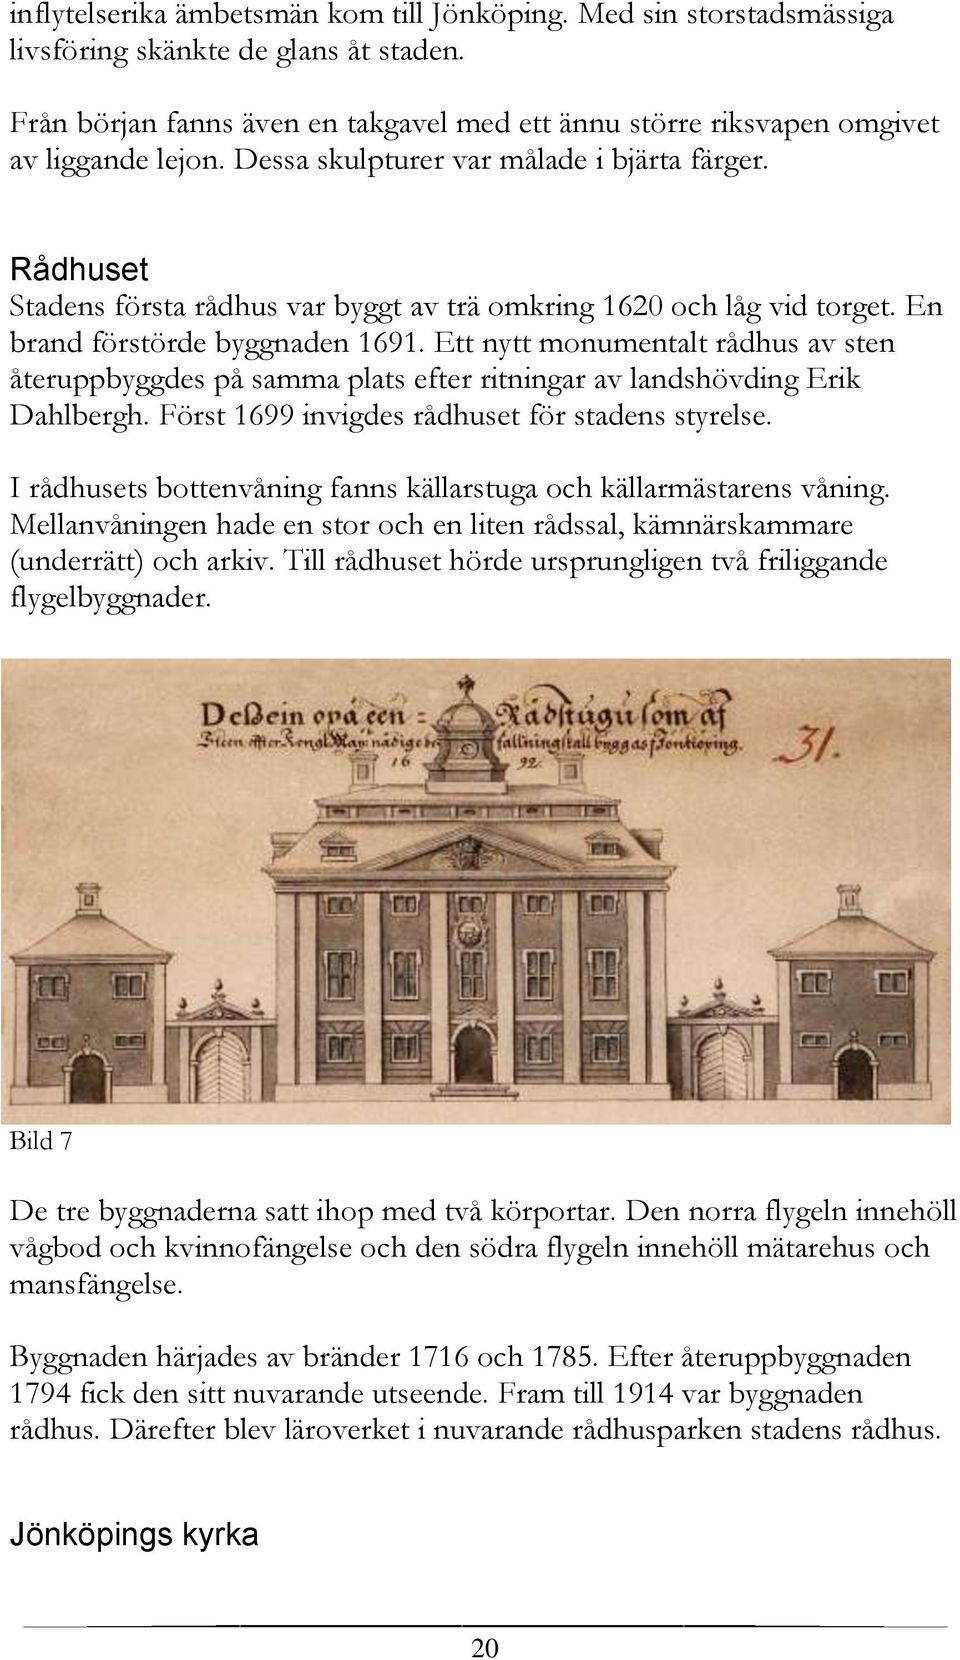 Ett nytt monumentalt rådhus av sten återuppbyggdes på samma plats efter ritningar av landshövding Erik Dahlbergh. Först 1699 invigdes rådhuset för stadens styrelse.